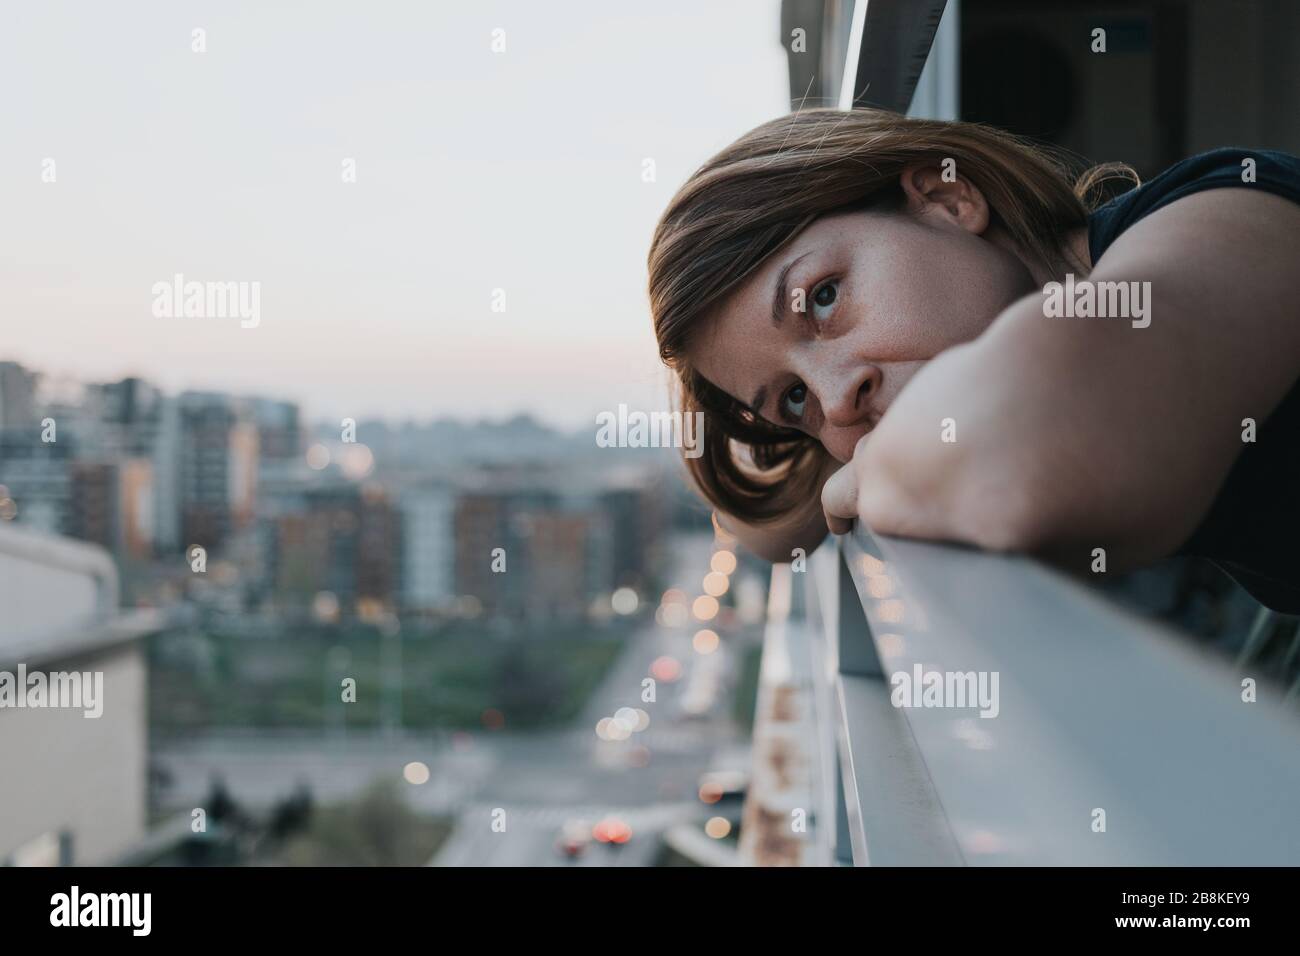 Jeune femme triste regardant à l'extérieur par balcon d'un immeuble d'appartements Banque D'Images